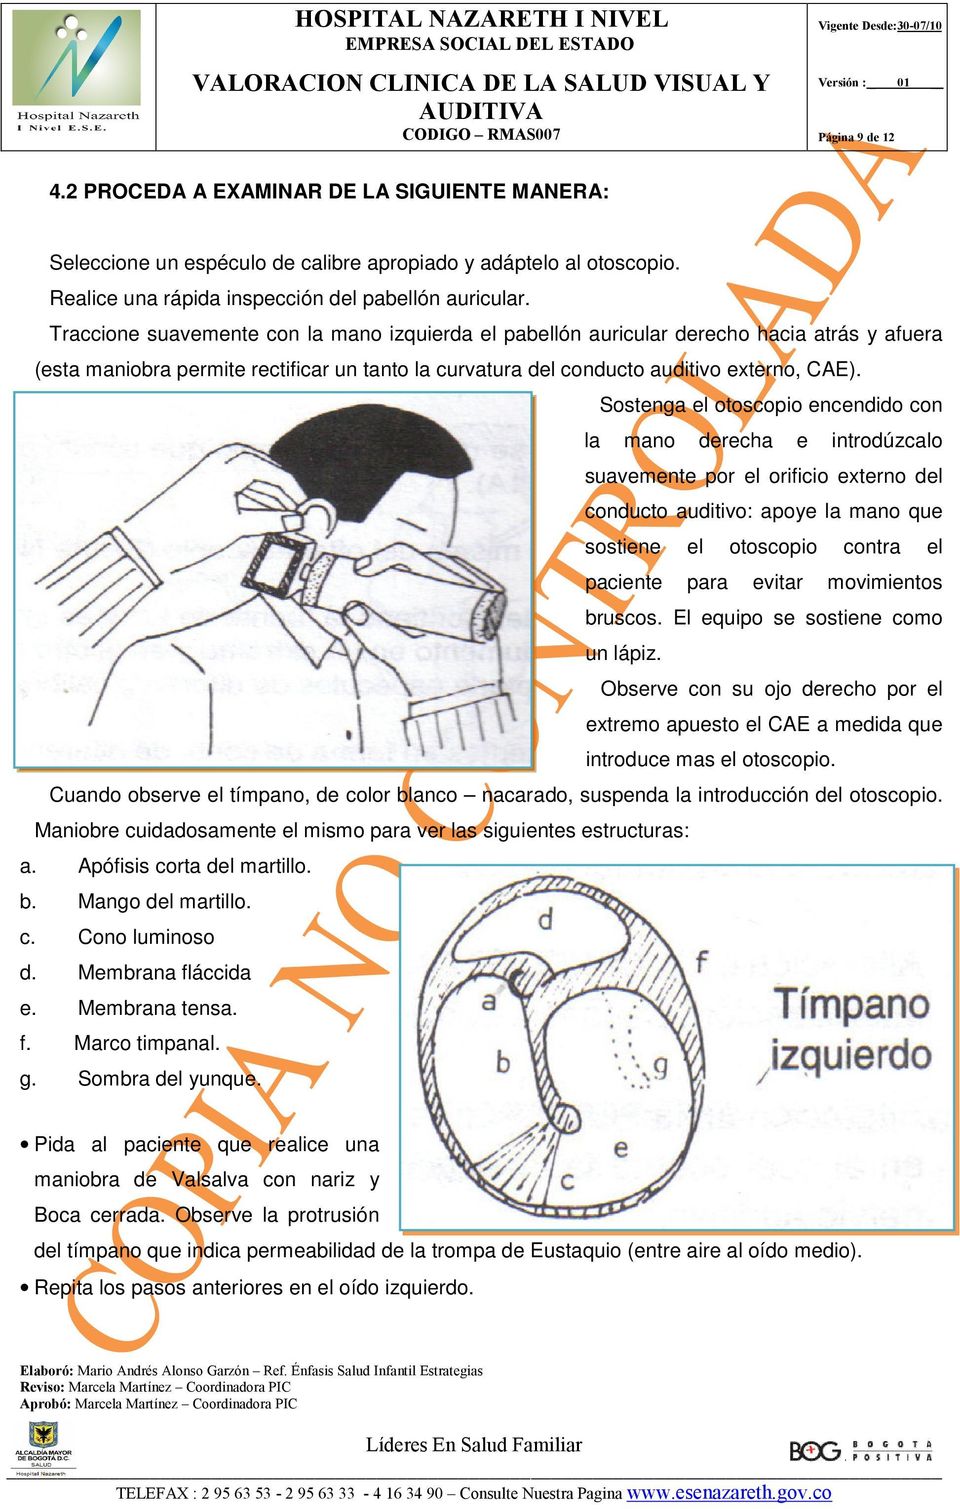 Sostenga el otoscopio encendido con la mano derecha e introdúzcalo suavemente por el orificio externo del conducto auditivo: apoye la mano que sostiene el otoscopio contra el paciente para evitar